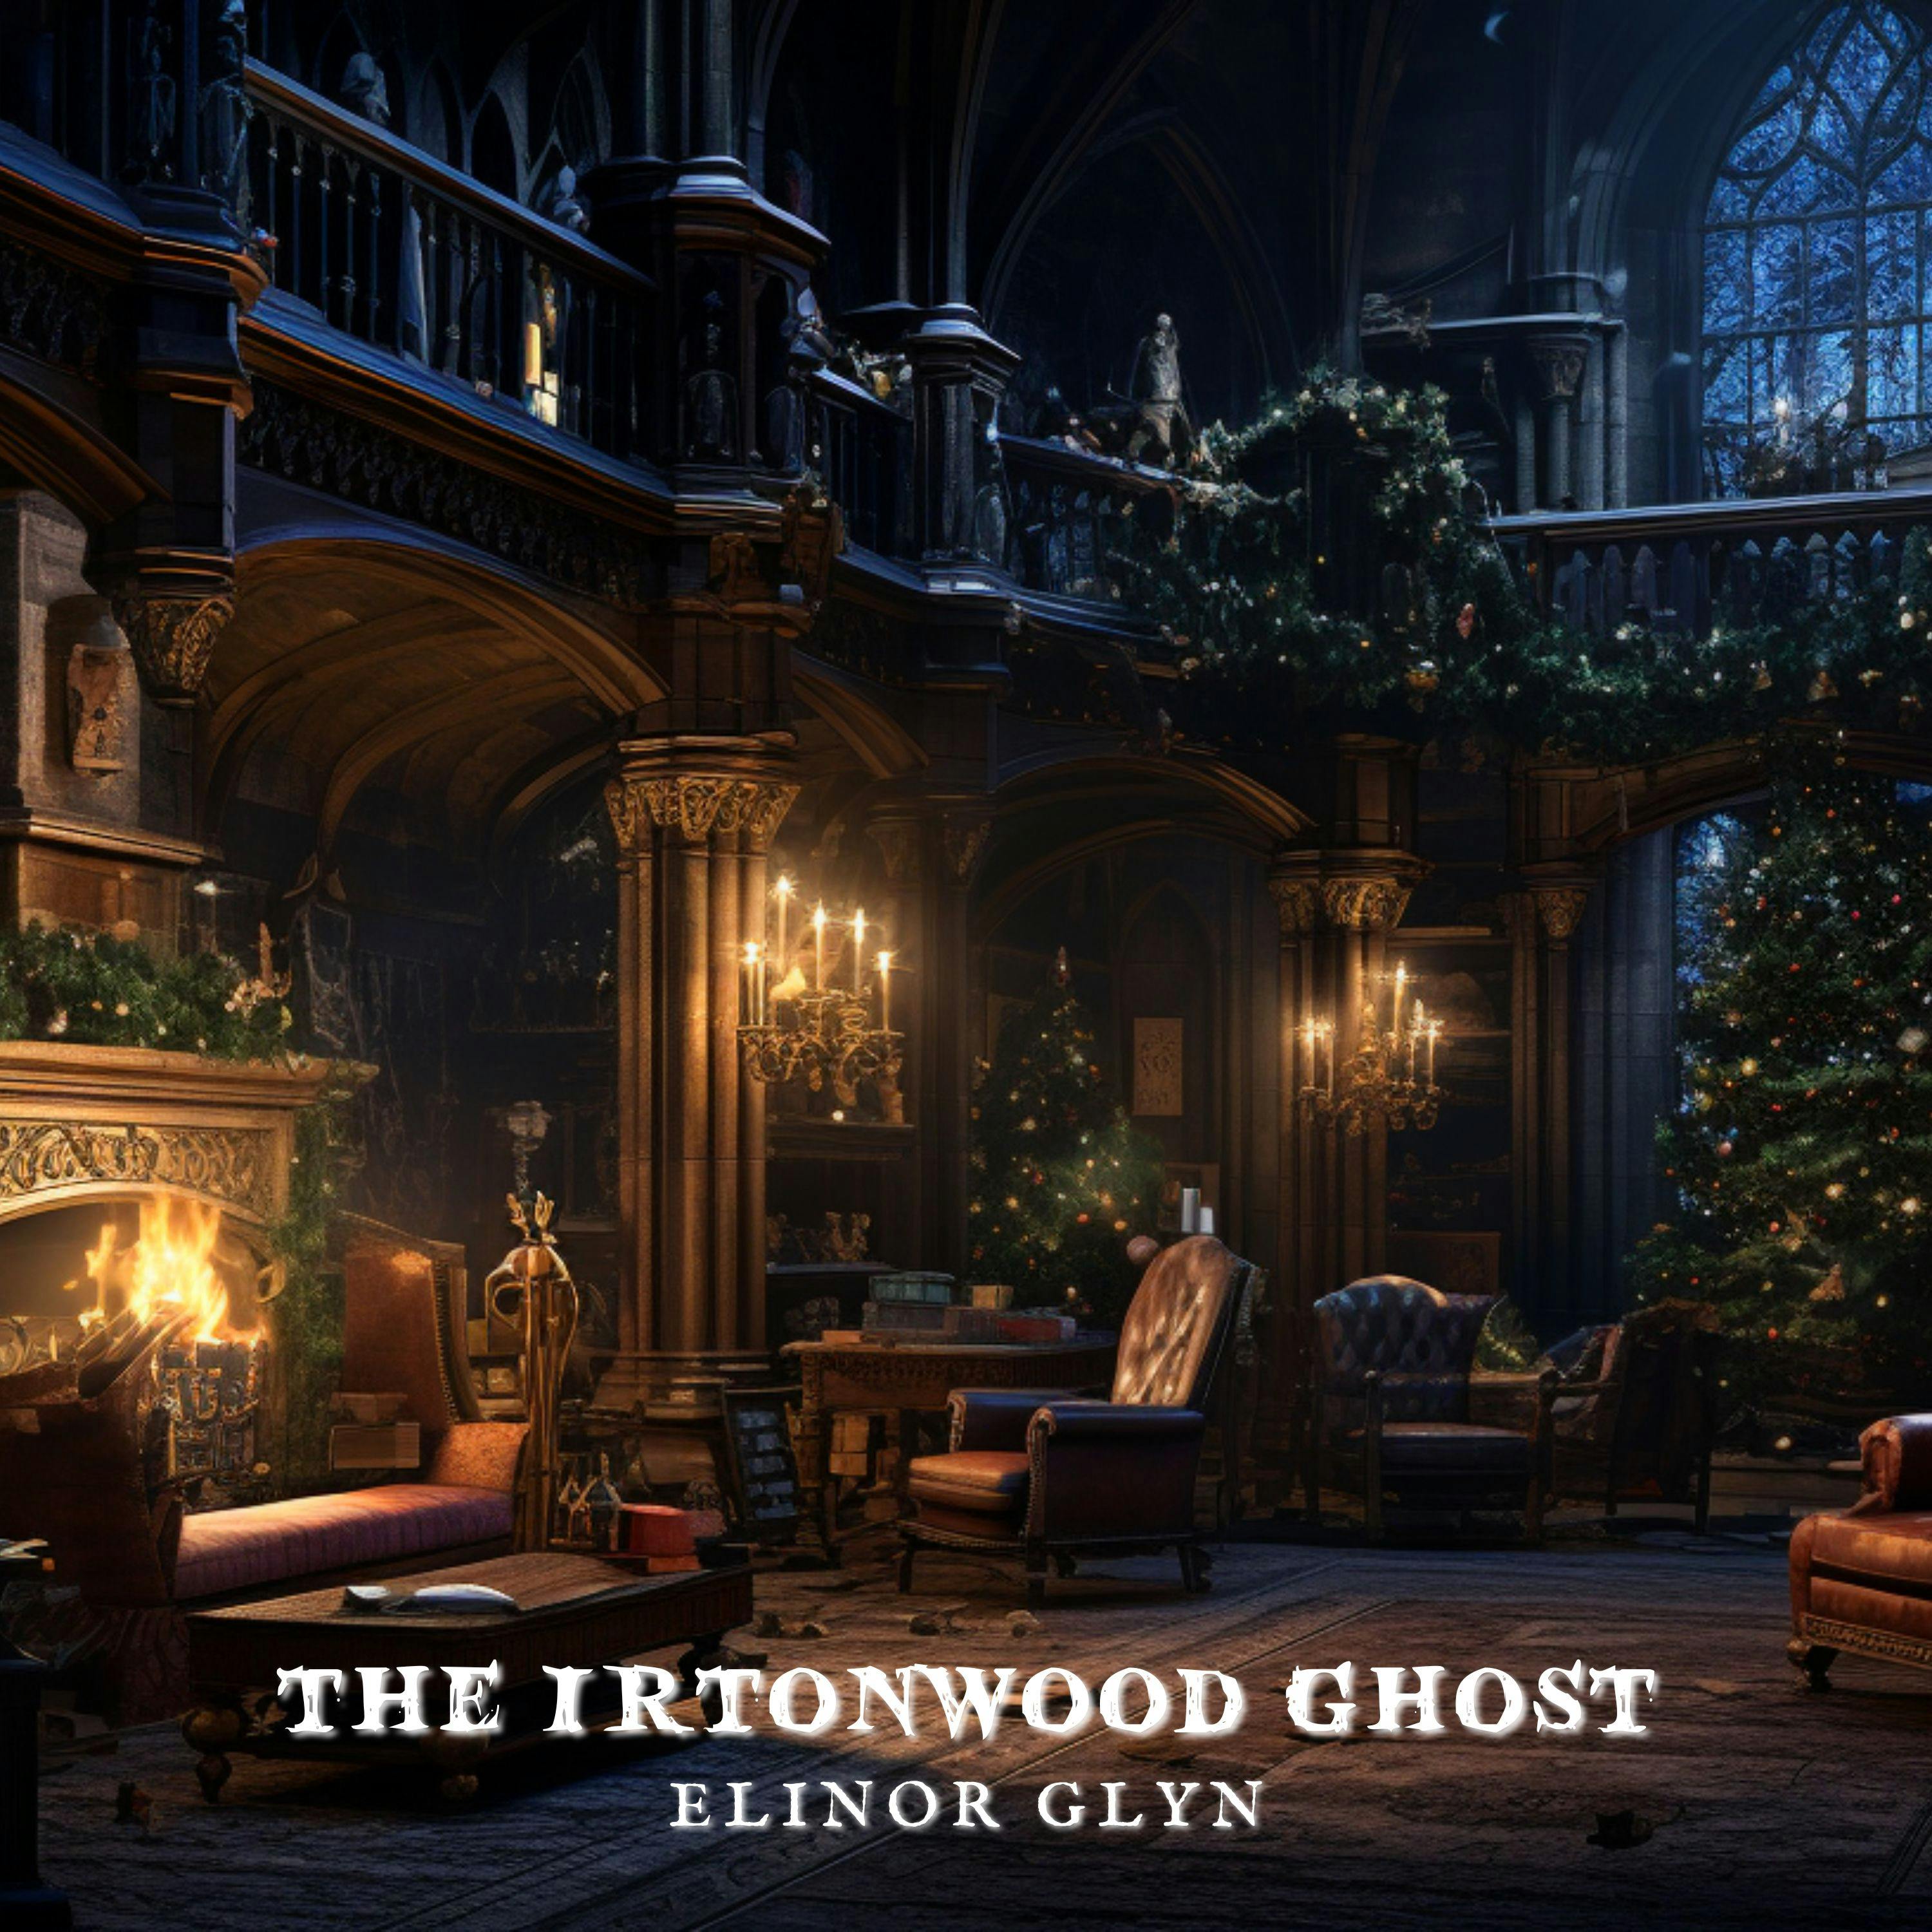 The Irtonwood Ghost by Elinor Glyn